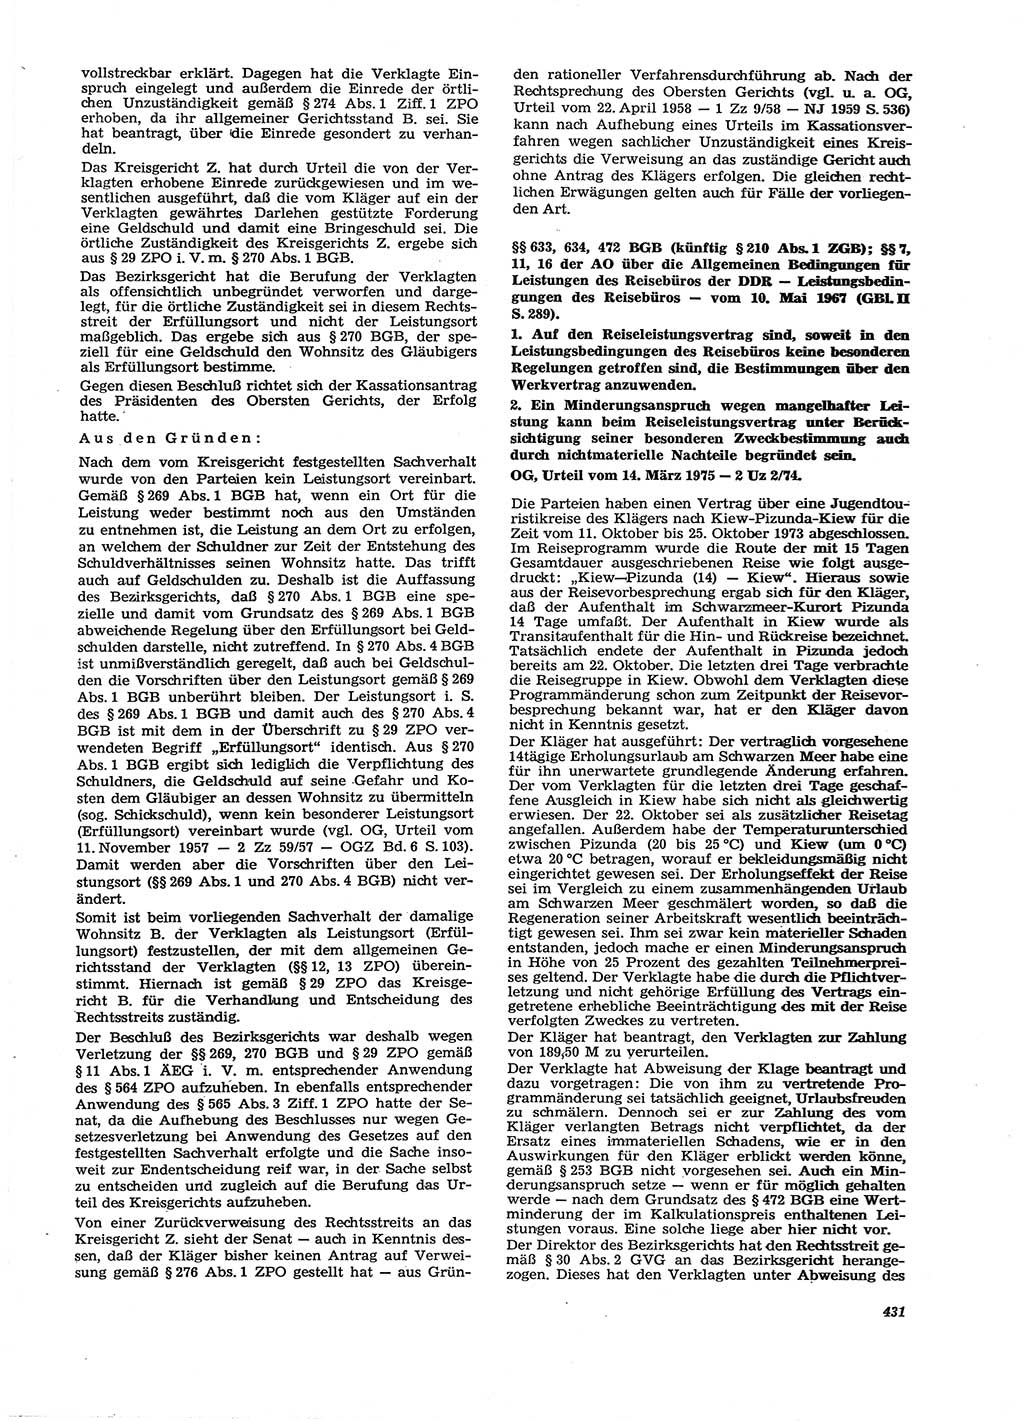 Neue Justiz (NJ), Zeitschrift für Recht und Rechtswissenschaft [Deutsche Demokratische Republik (DDR)], 29. Jahrgang 1975, Seite 431 (NJ DDR 1975, S. 431)